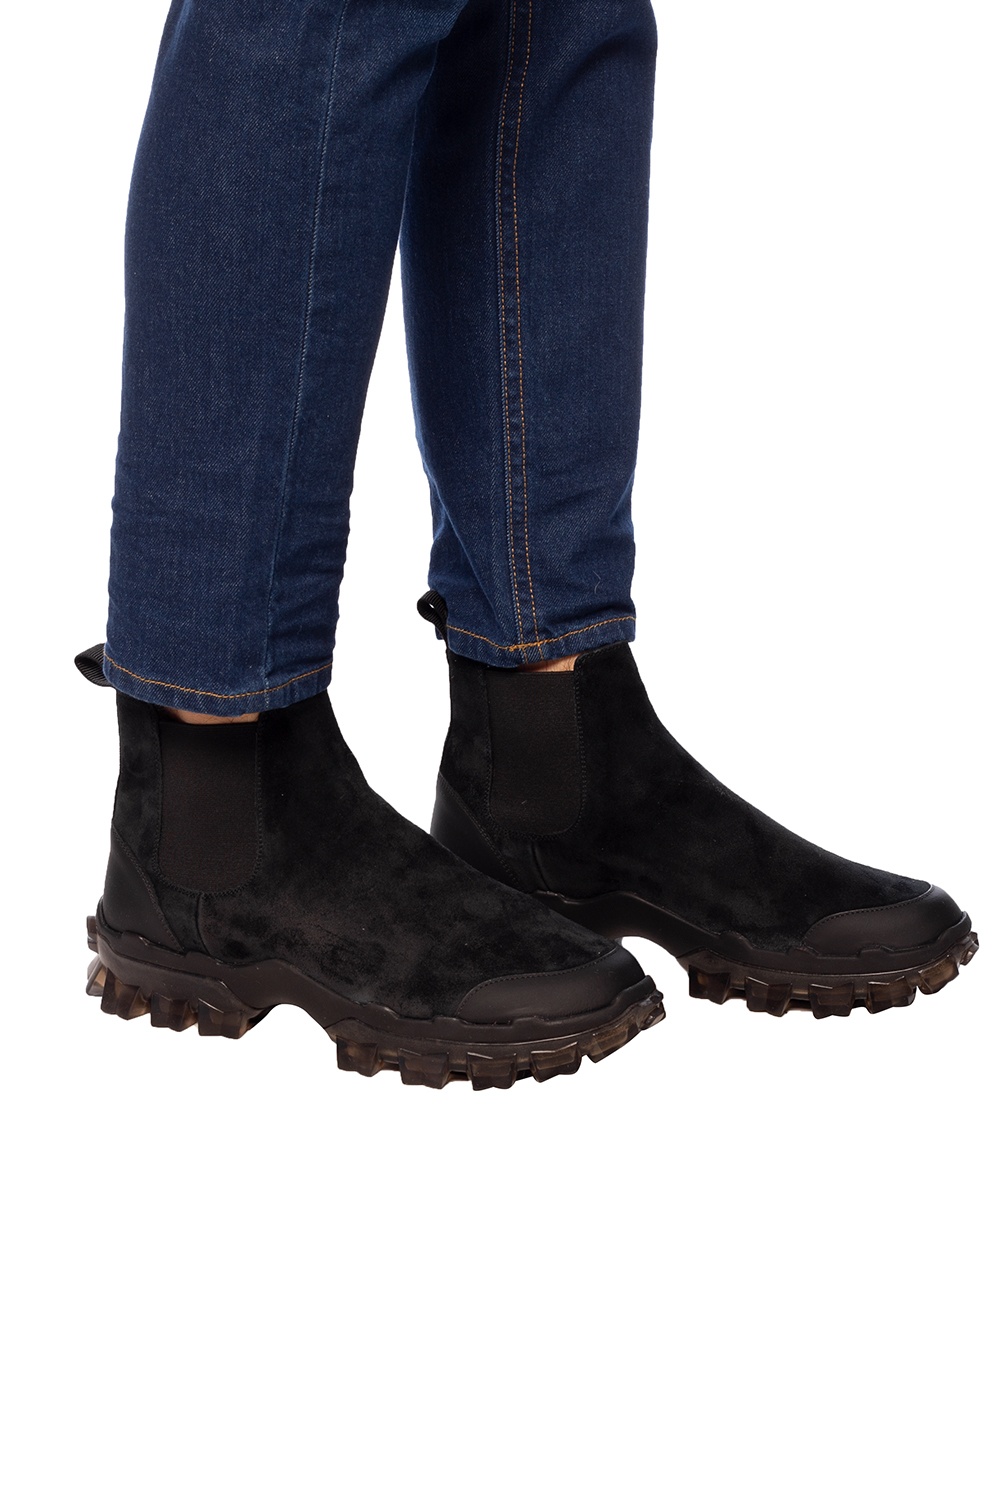 moncler chelsea boots